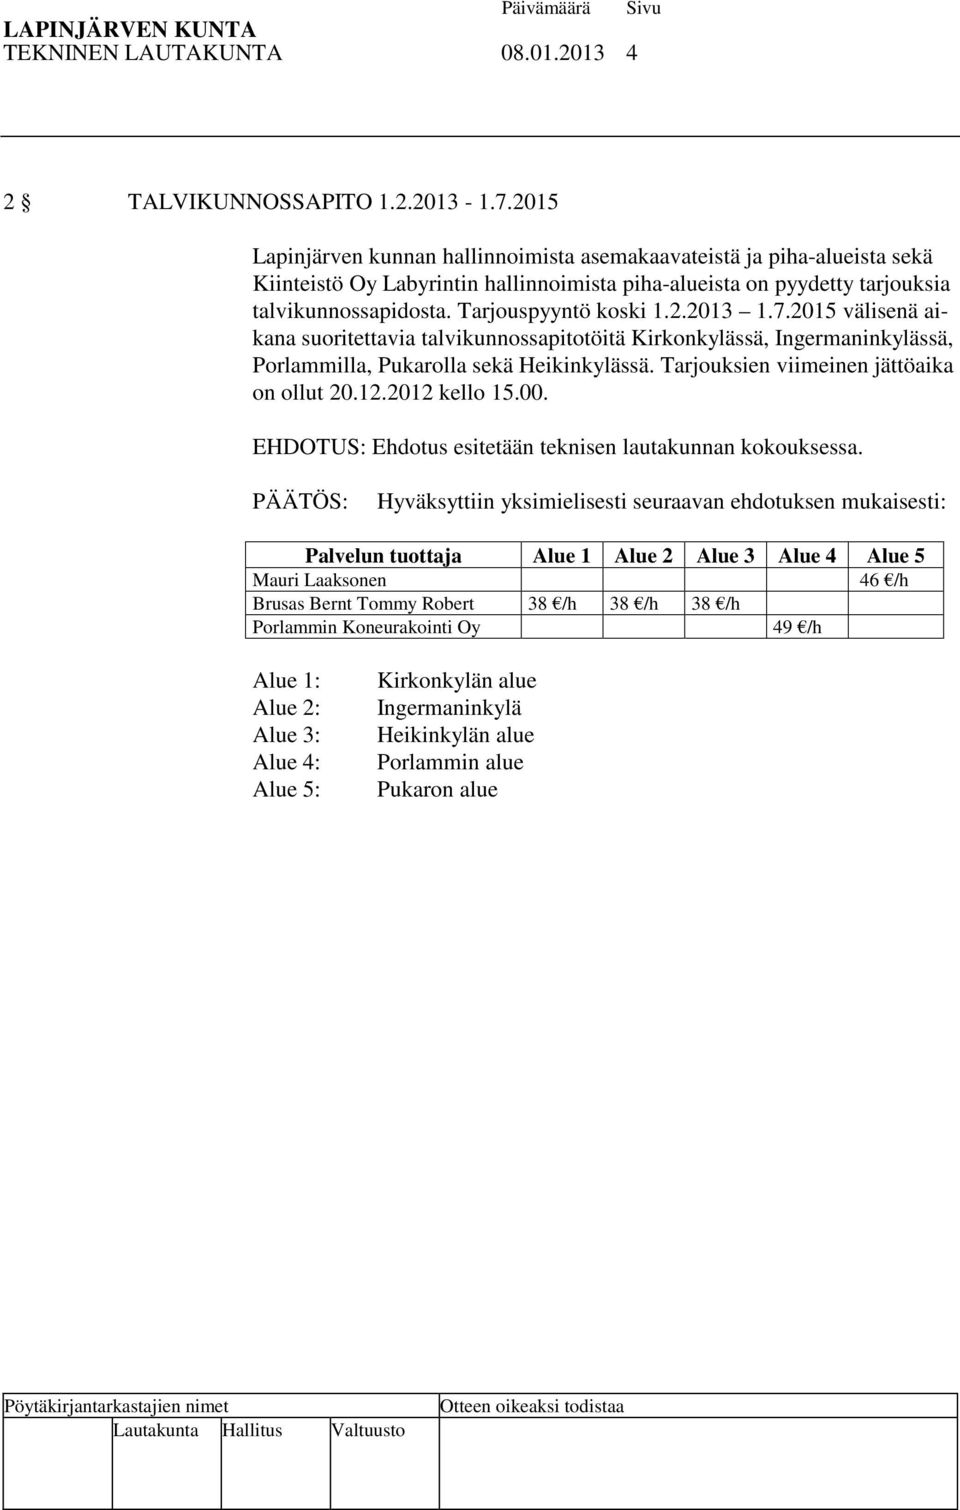 2.2013 1.7.2015 välisenä aikana suoritettavia talvikunnossapitotöitä Kirkonkylässä, Ingermaninkylässä, Porlammilla, Pukarolla sekä Heikinkylässä. Tarjouksien viimeinen jättöaika on ollut 20.12.